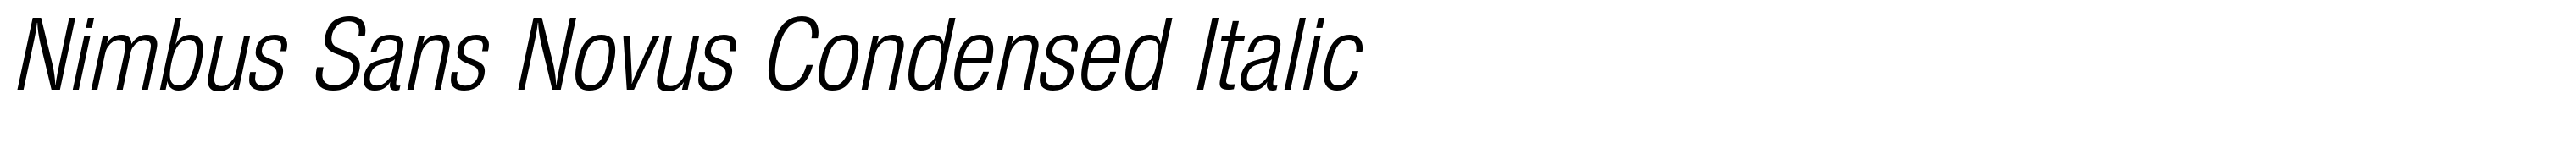 Nimbus Sans Novus Condensed Italic